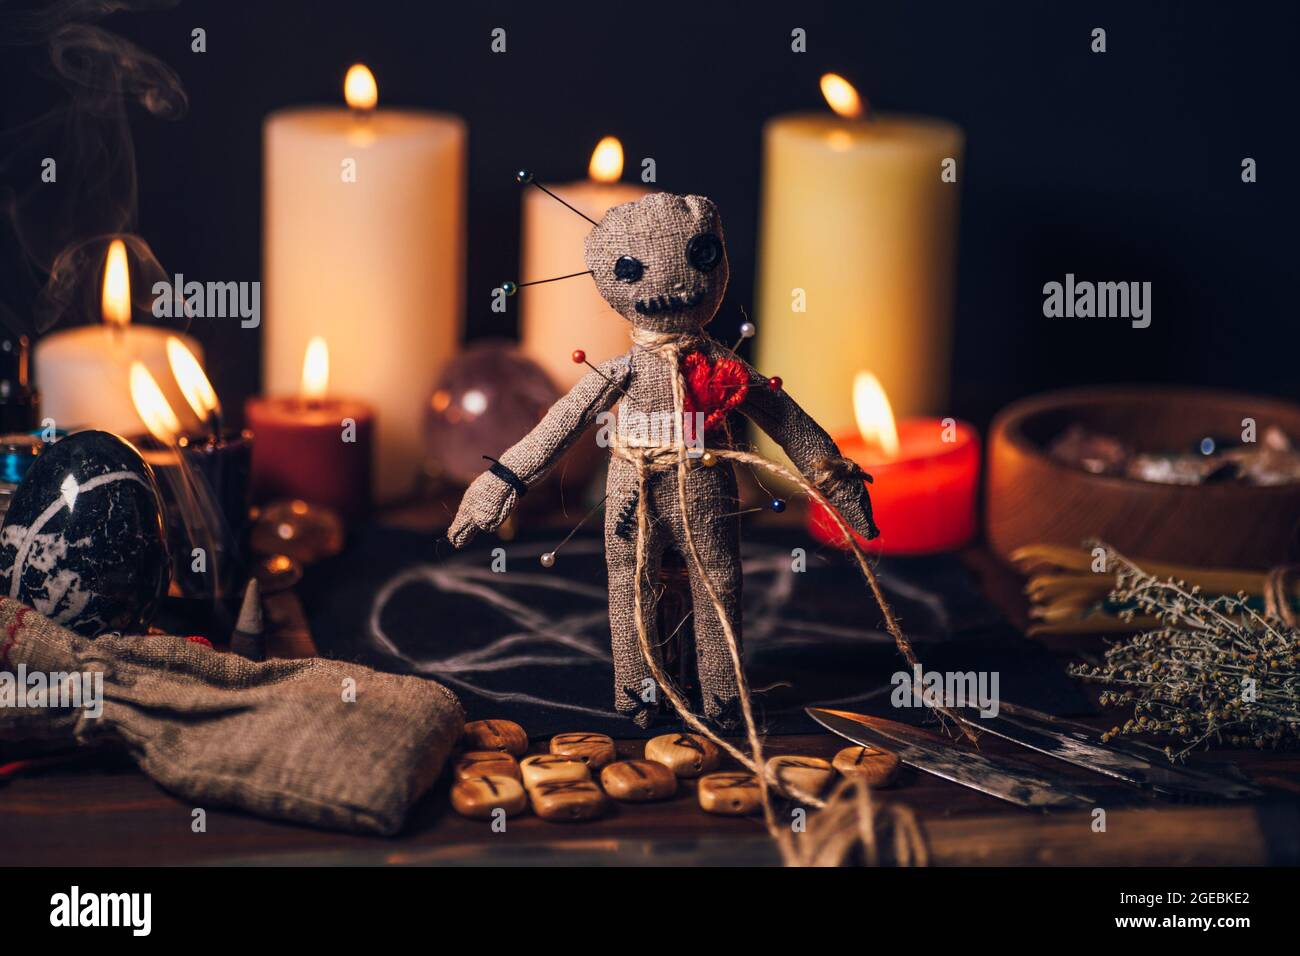 Voodoo-Puppe auf einem magischen Tisch mit esoterischen Objekten und brennenden Kerzen für ein magisches Racheritual. Stockfoto